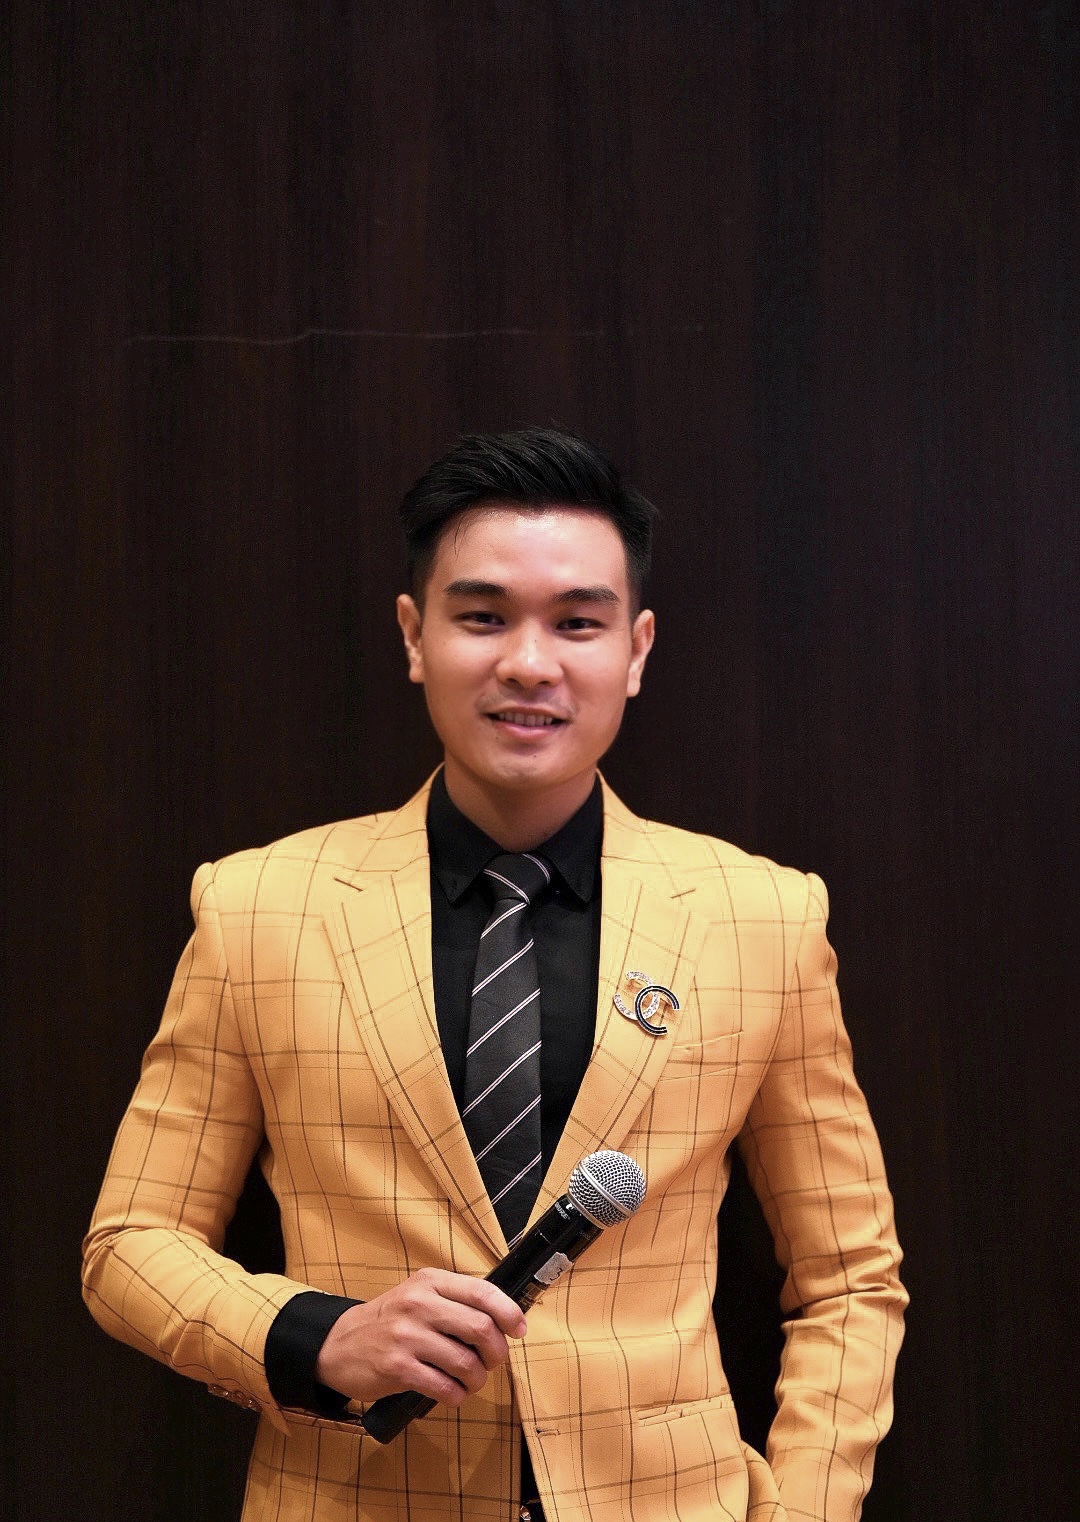 Én vàng 2021: MC Minh Thắng vào Top 6 với điểm số cao nhất phần thi Toàn năng